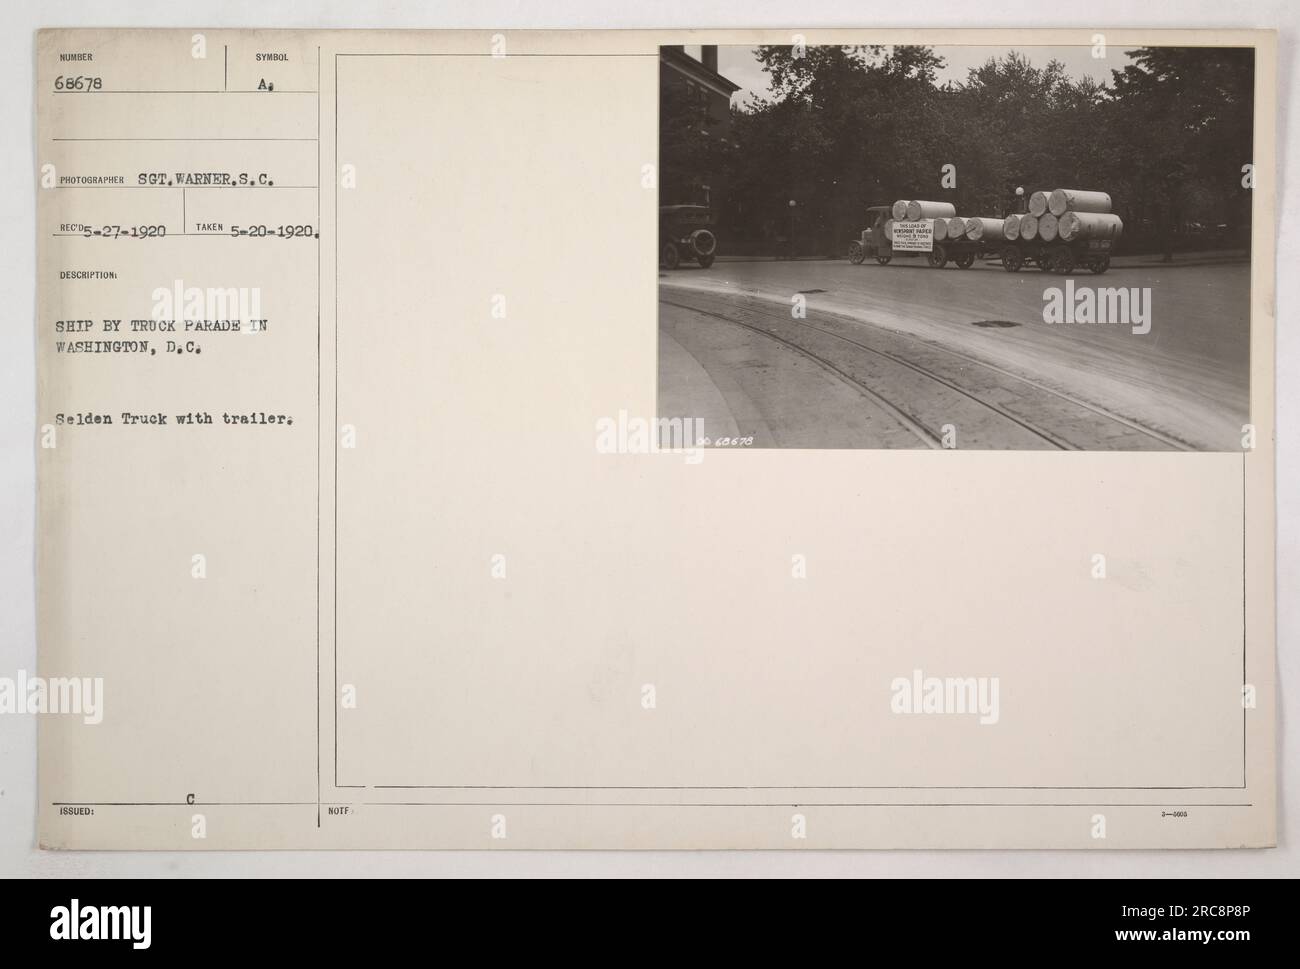 Un autocarro Selden con rimorchio partecipa a una sfilata di veicoli navali a Washington, D.C. La foto è stata scattata il 20 maggio 1920 e fu catturata dal Sgt. Warner, un fotografo dell'unità S.C.. La sua descrizione include la designazione SYNOL A₁ e la nota del fotografo, che menziona il numero di identificazione del carrello 68678. Foto Stock